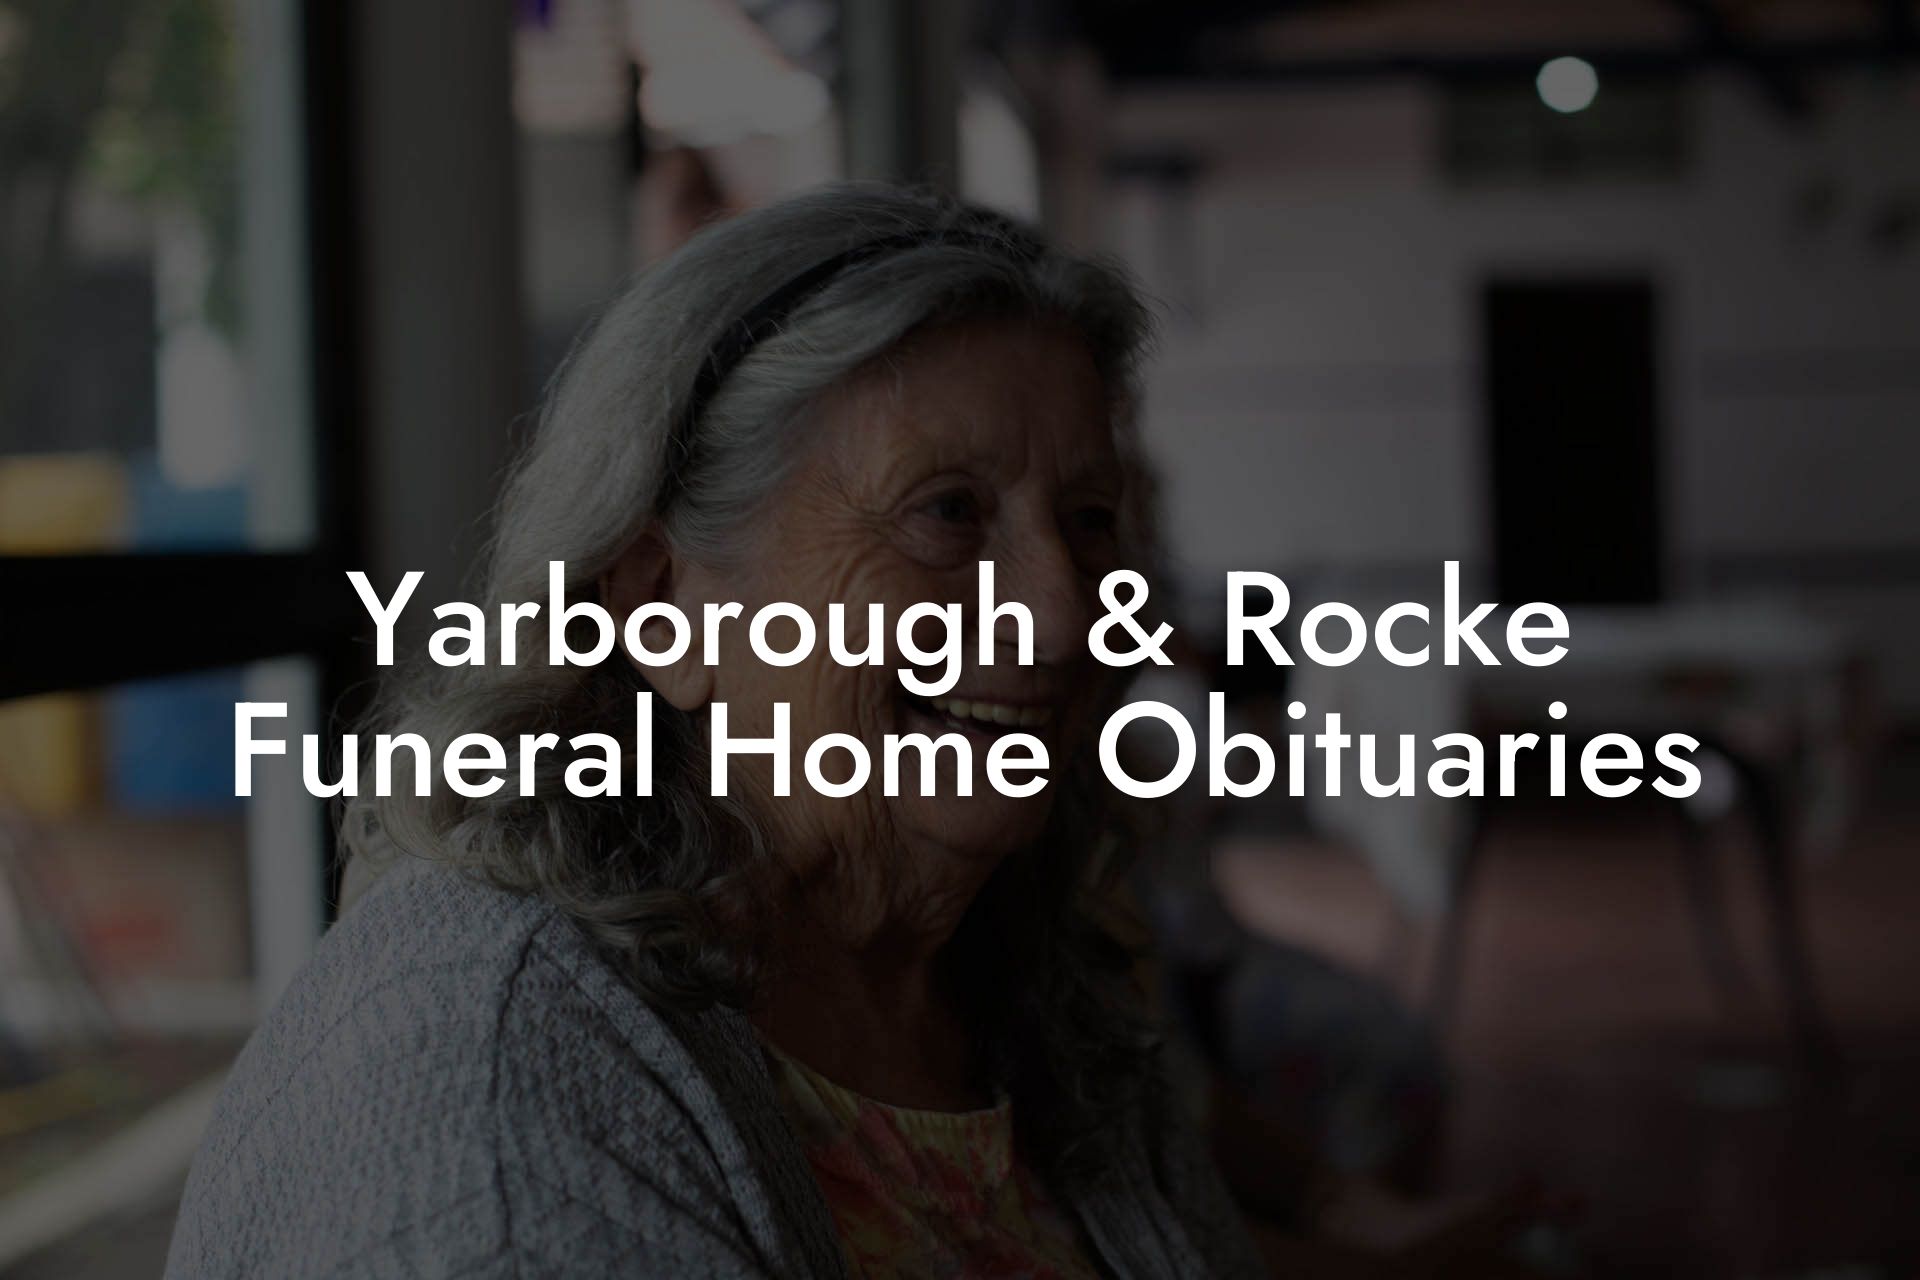 Yarborough & Rocke Funeral Home Obituaries